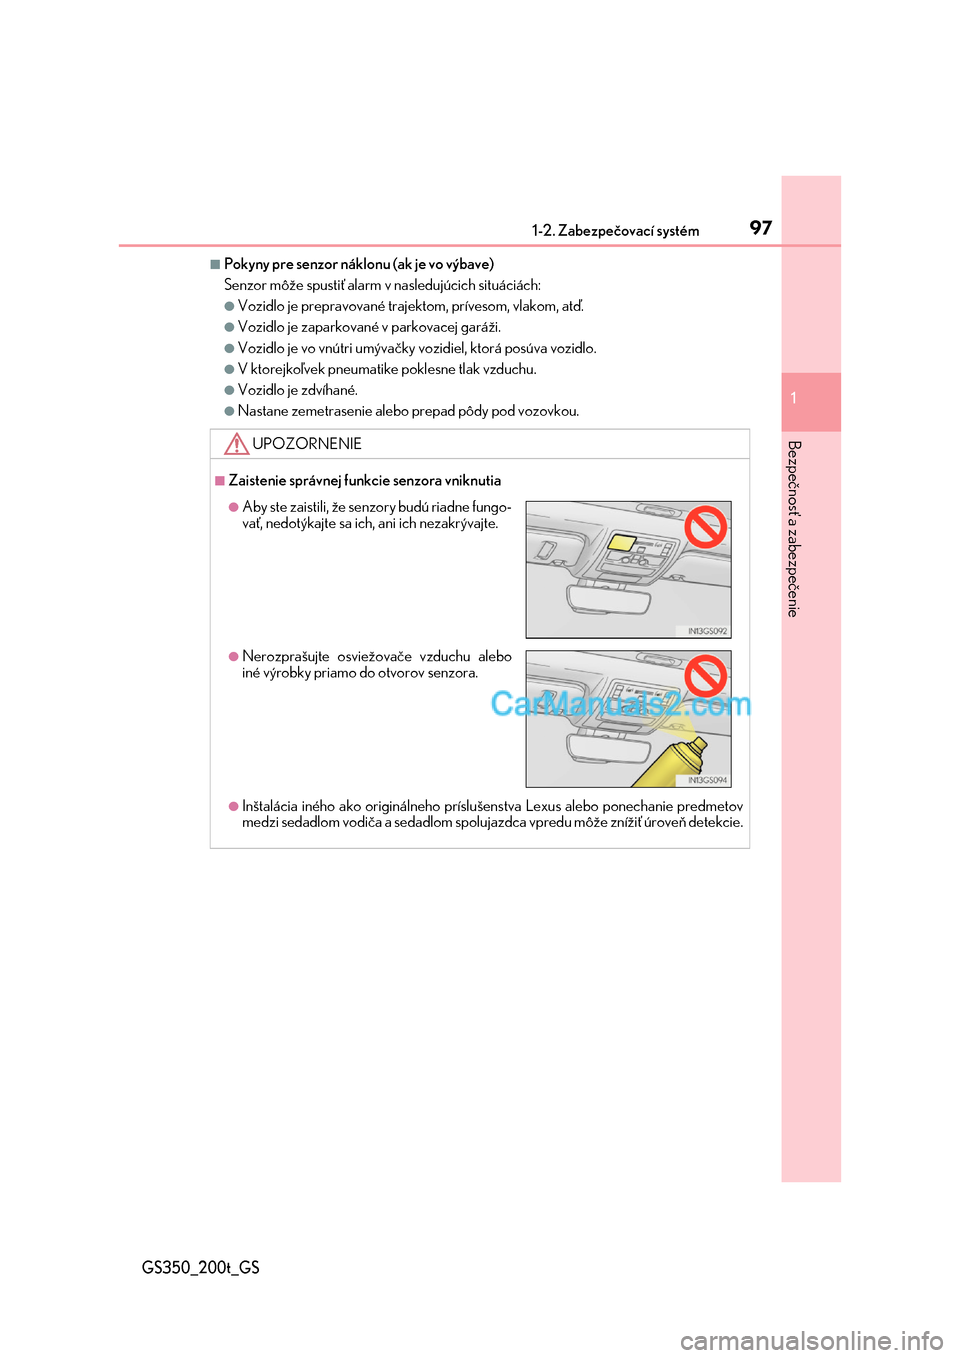 Lexus GS350 2017  Užívateľská príručka (in Slovak) 971-2. Zabezpečovací systém
1
GS350_200t_GS
Bezpečnosť a zabezpečenie
■Pokyny pre senzor náklonu (ak je vo výbave) 
Senzor môže spustiť alarm  v nasledujúcich situáciách:
●Vozidlo je